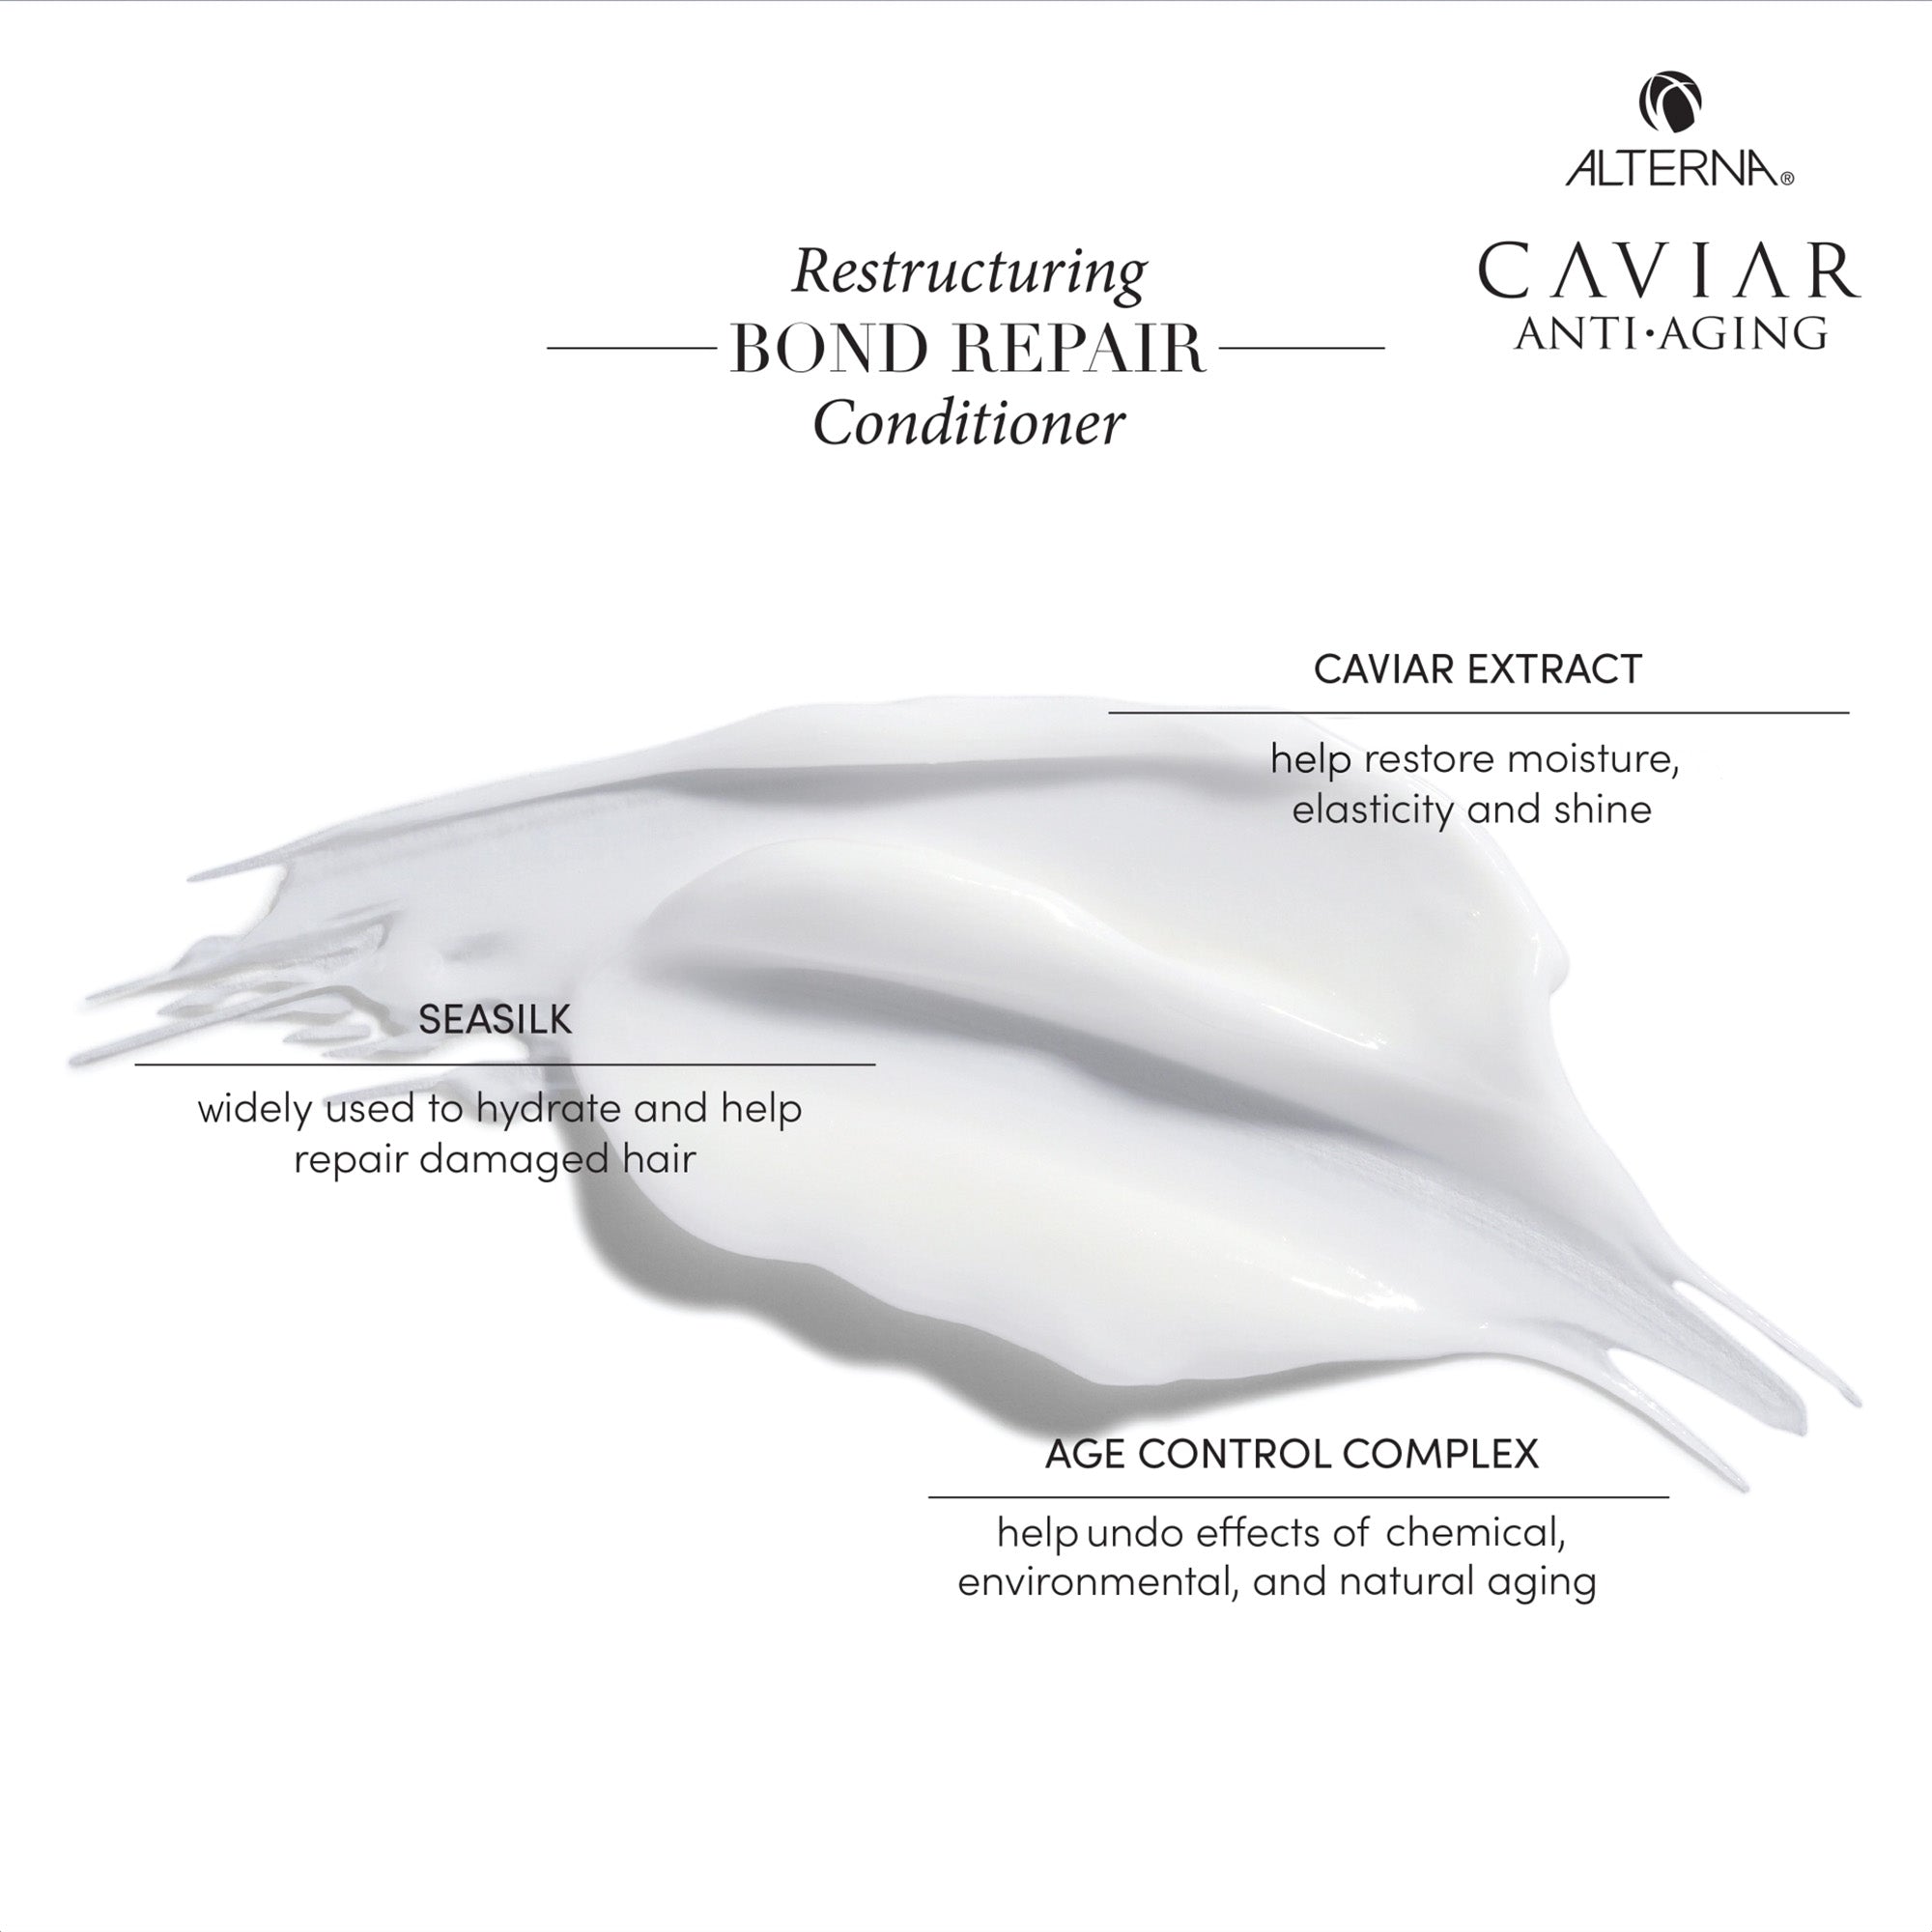 Alterna Caviar Anti-Aging Restructuring Bond Repair Conditioner / 33OZ